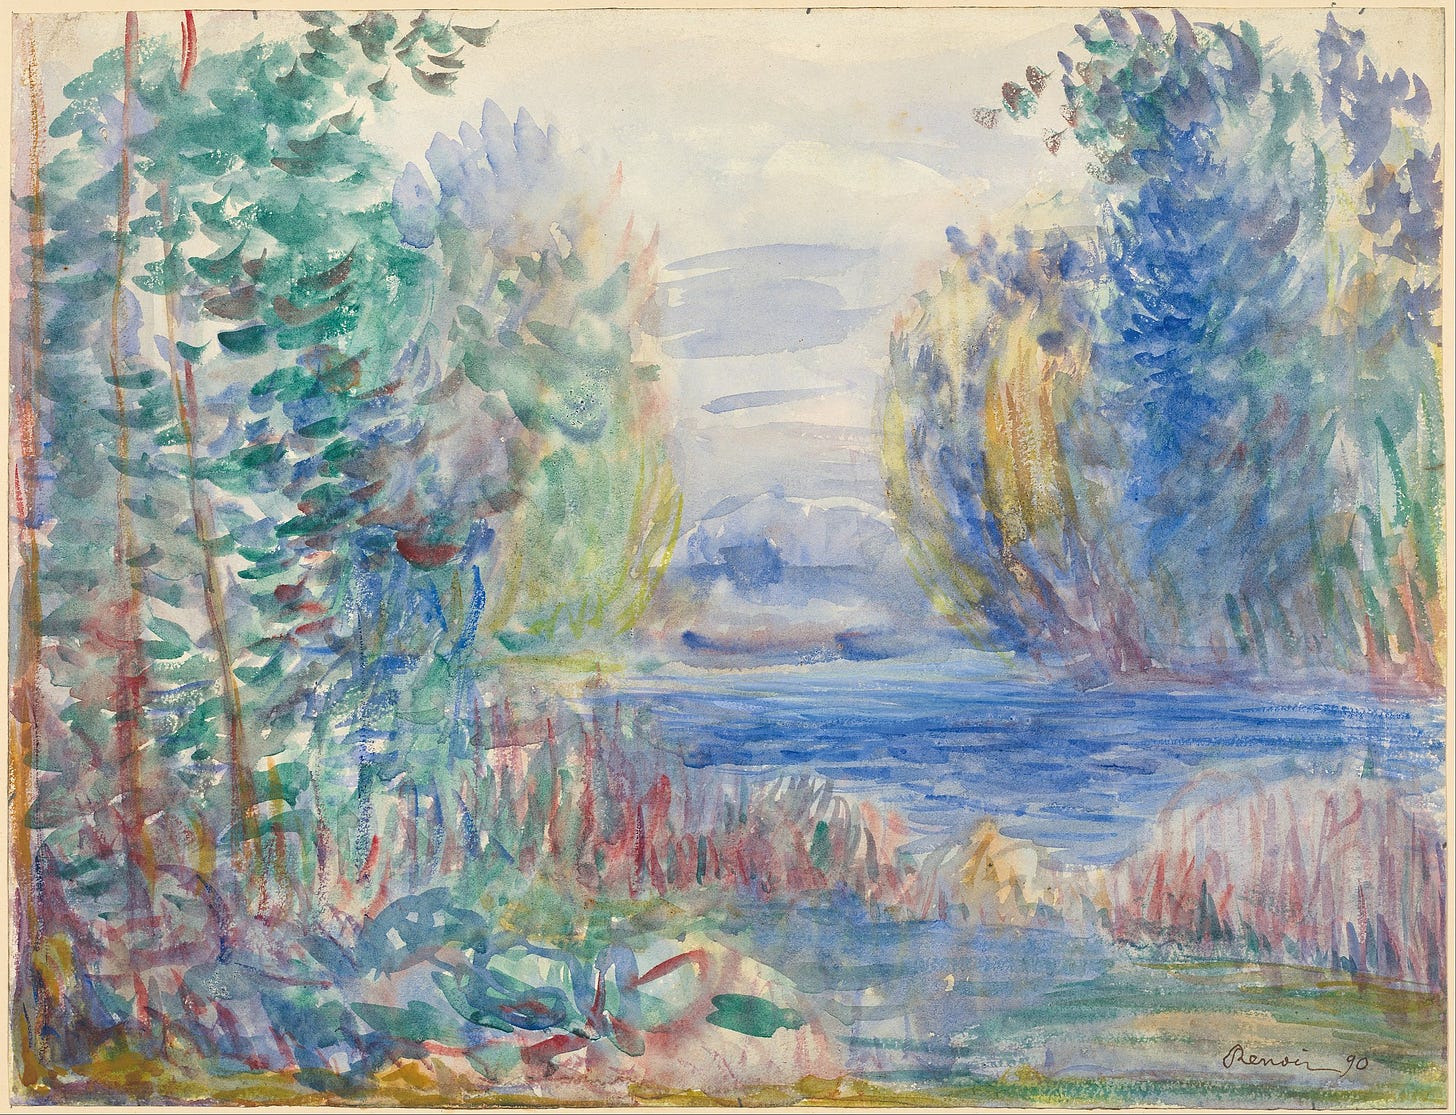 File:Pierre-Auguste Renoir - River Landscape, 1890 - Google Art Project.jpg  - Wikimedia Commons